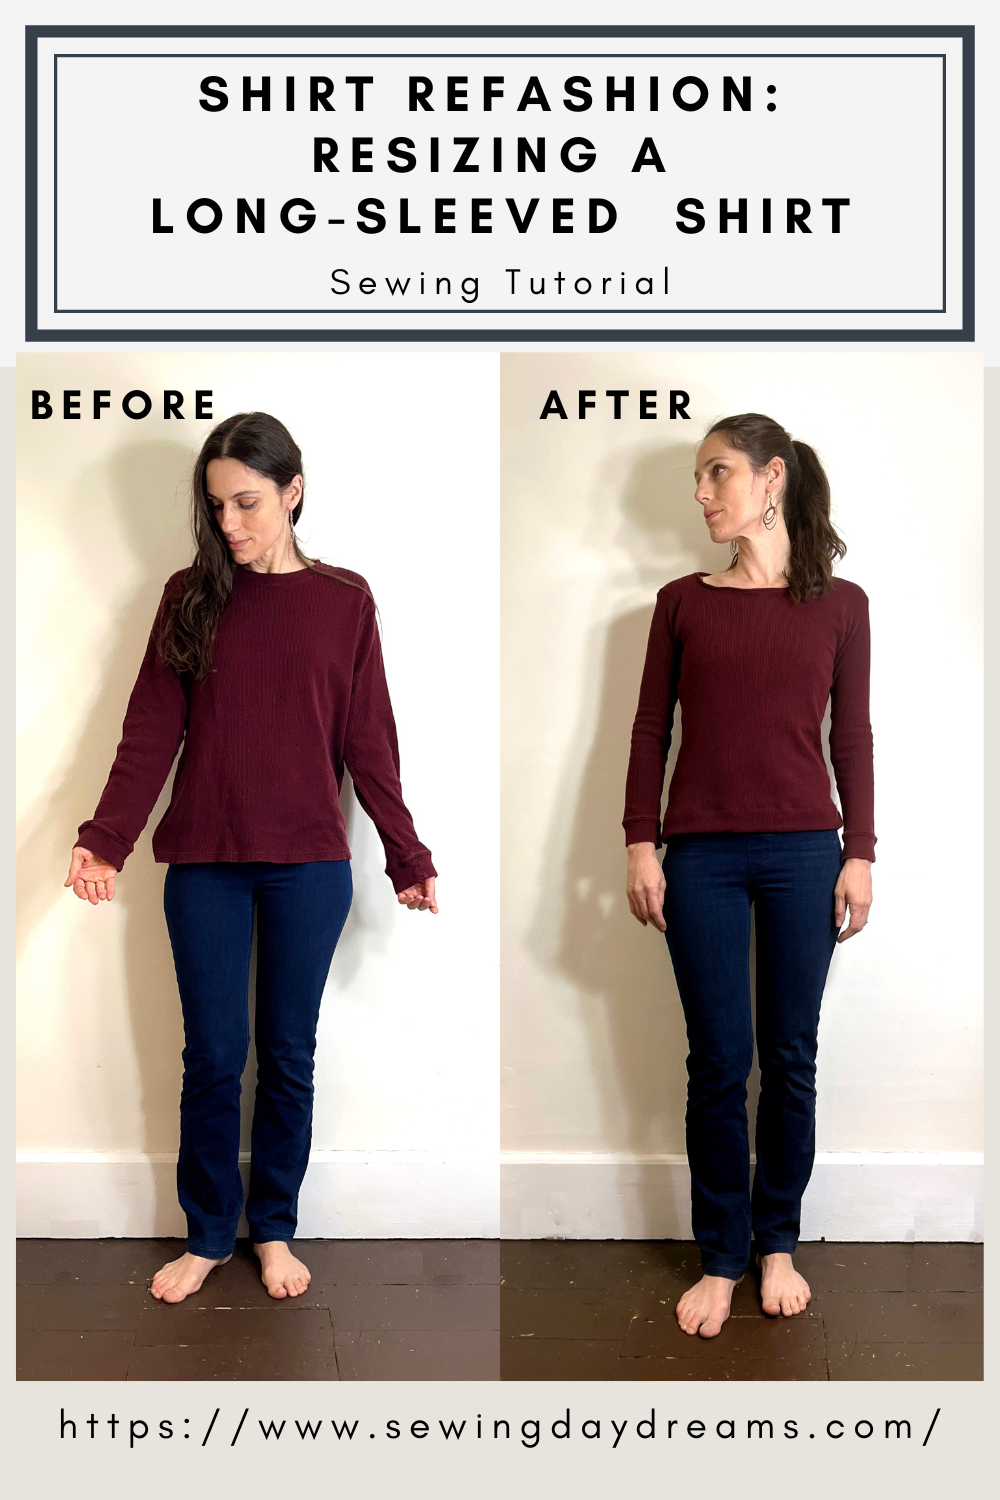 Shirt Refashion: Resizing a Long-Sleeved Shirt | Sewing Daydreams